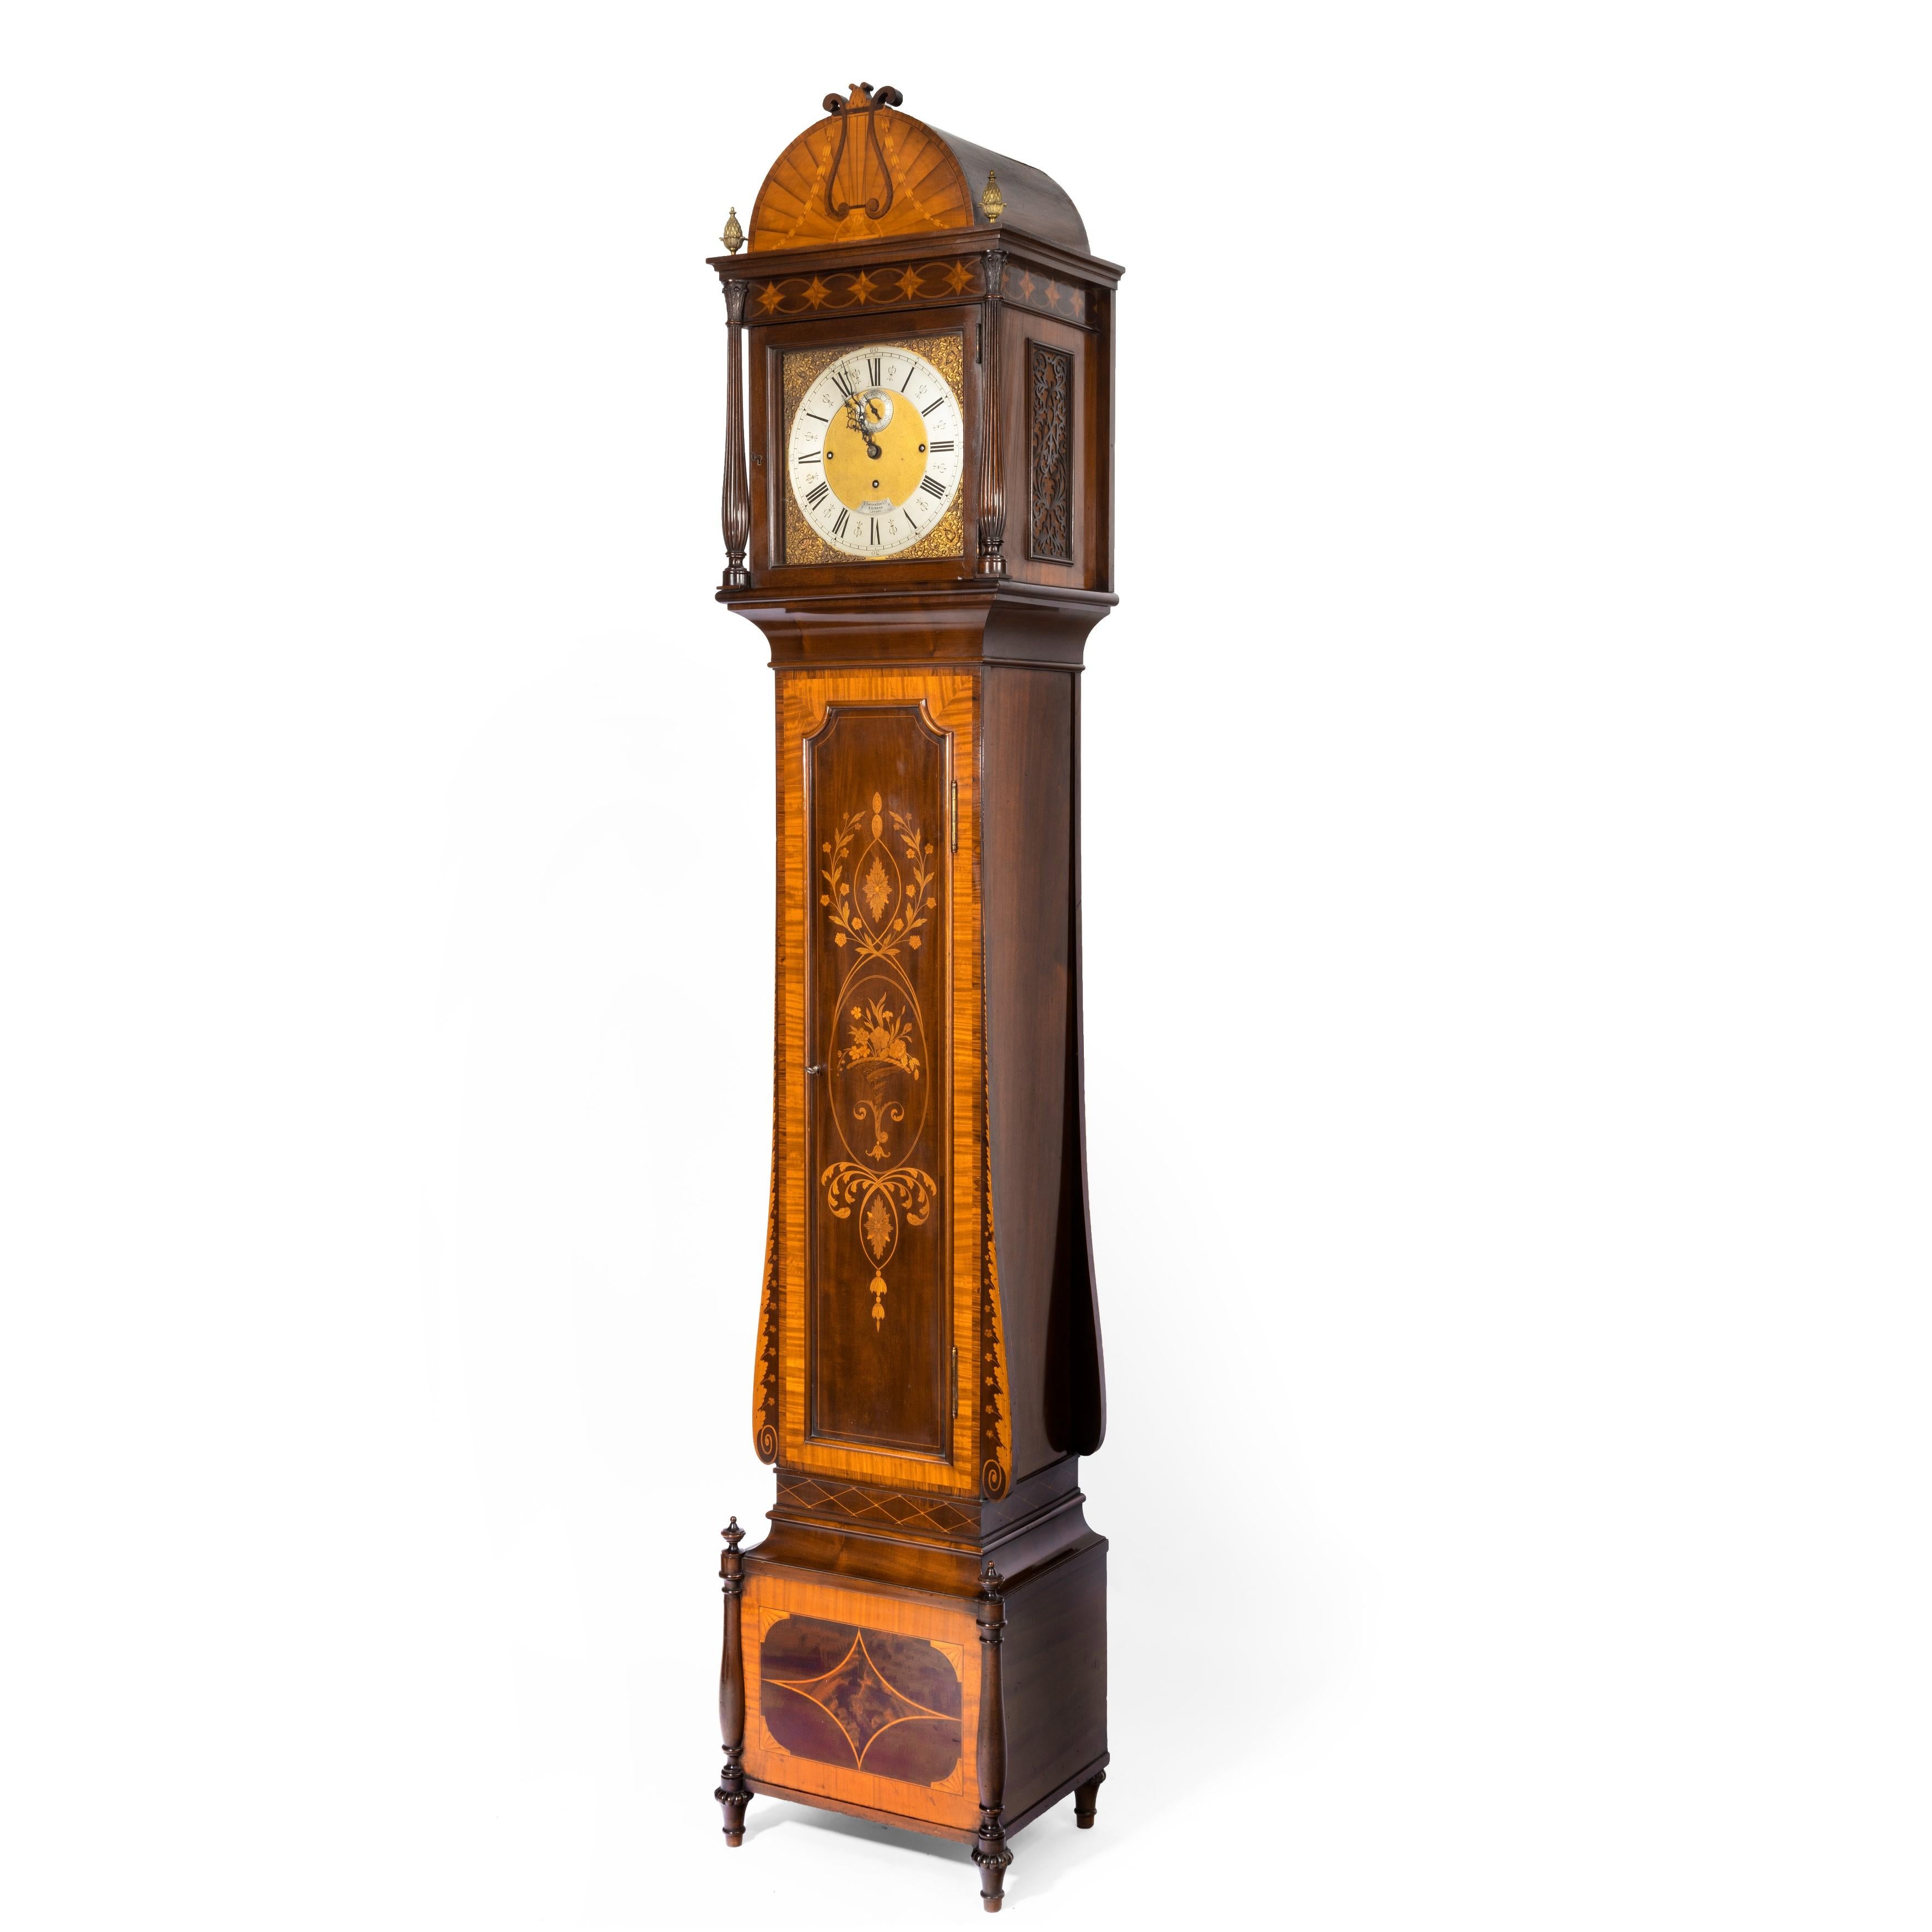 Eine ungewöhnliche Uhr mit langem Gehäuse aus geflammtem Mahagoni, die Maples zugeschrieben wird, mit einem 3-Zug-Werk von Smith & Sons. Das Gehäuse hat einen abgestuften Sockel, die Haube mit zwei kannelierten Säulen und Messingknäufen, die von